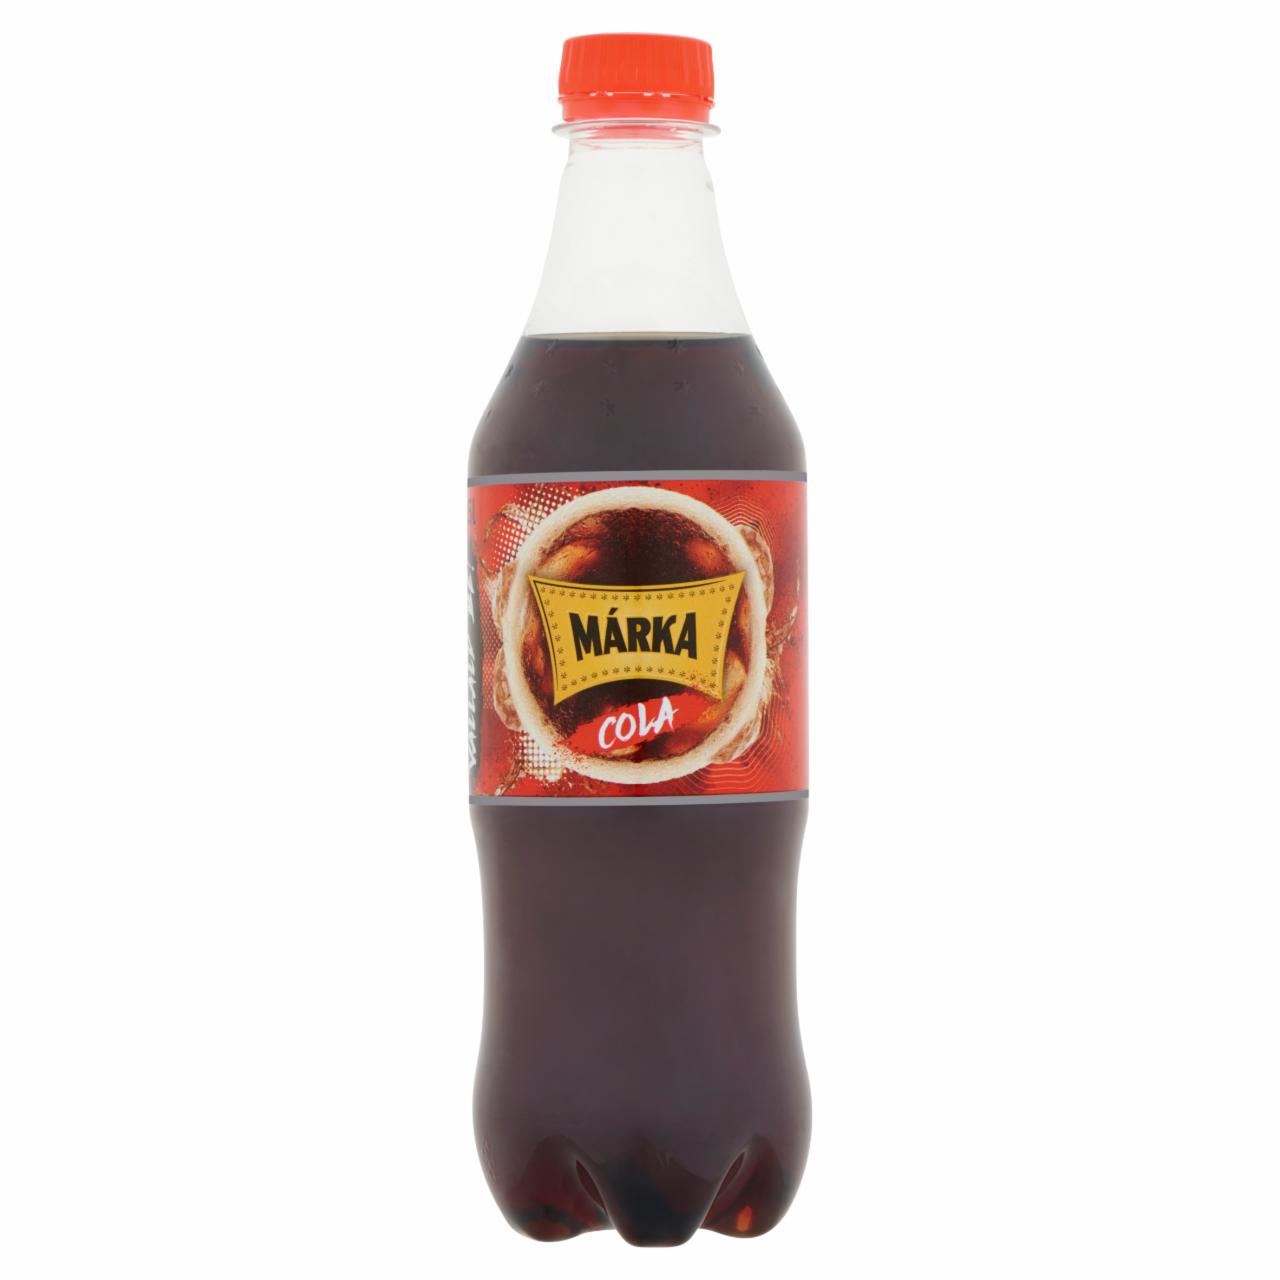 Képek - Márka cola ízű szénsavas üdítőital cukorral és édesítőszerekkel 0,5 l